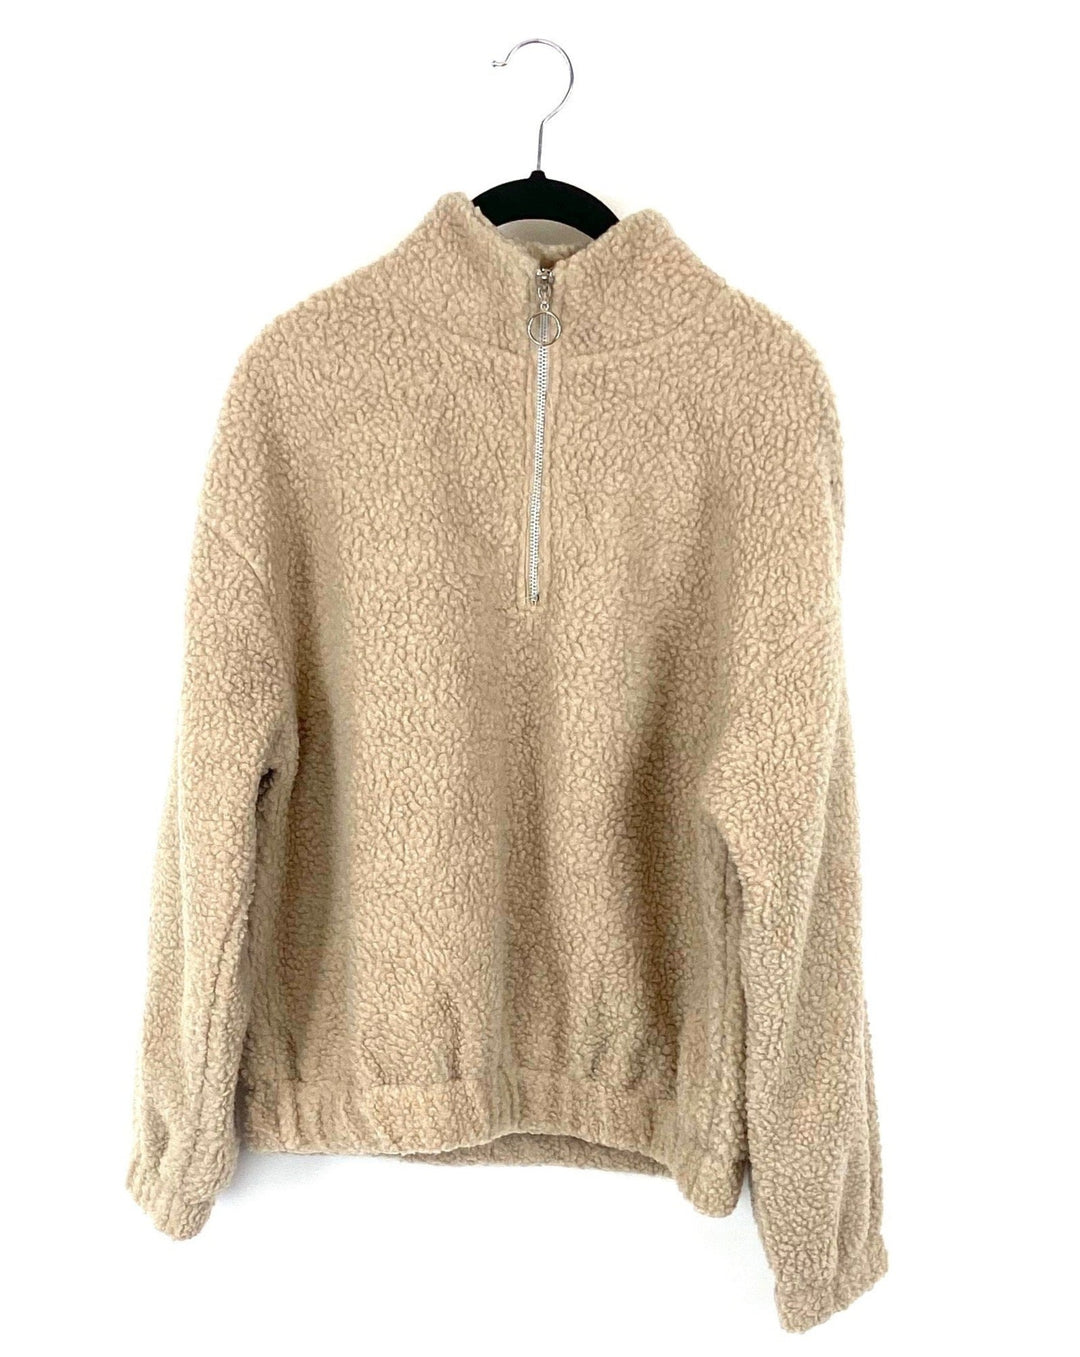 Tan Sherpa Quarter-Zip Cropped Sweatshirt - Medium, Large